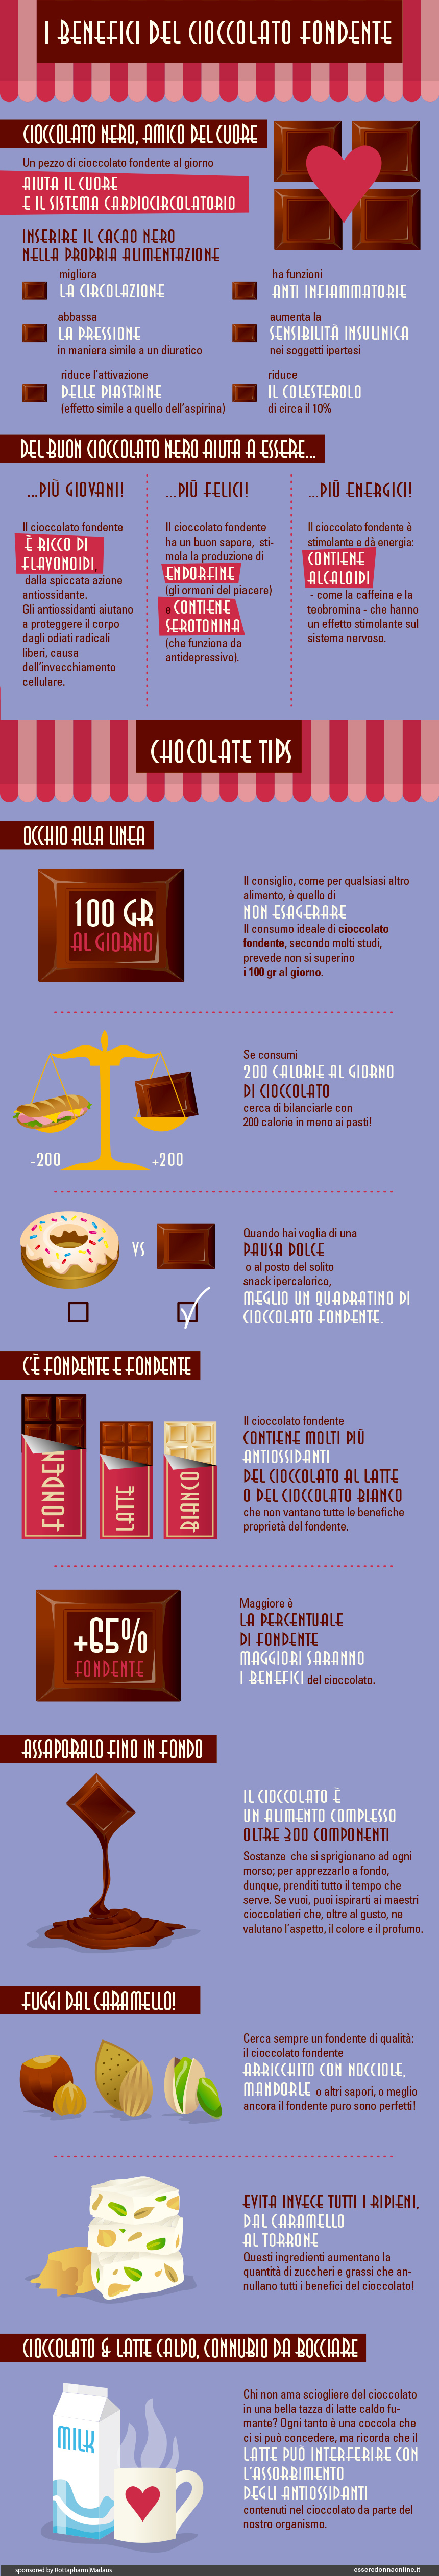 proprietà del cioccolato fondente infografica